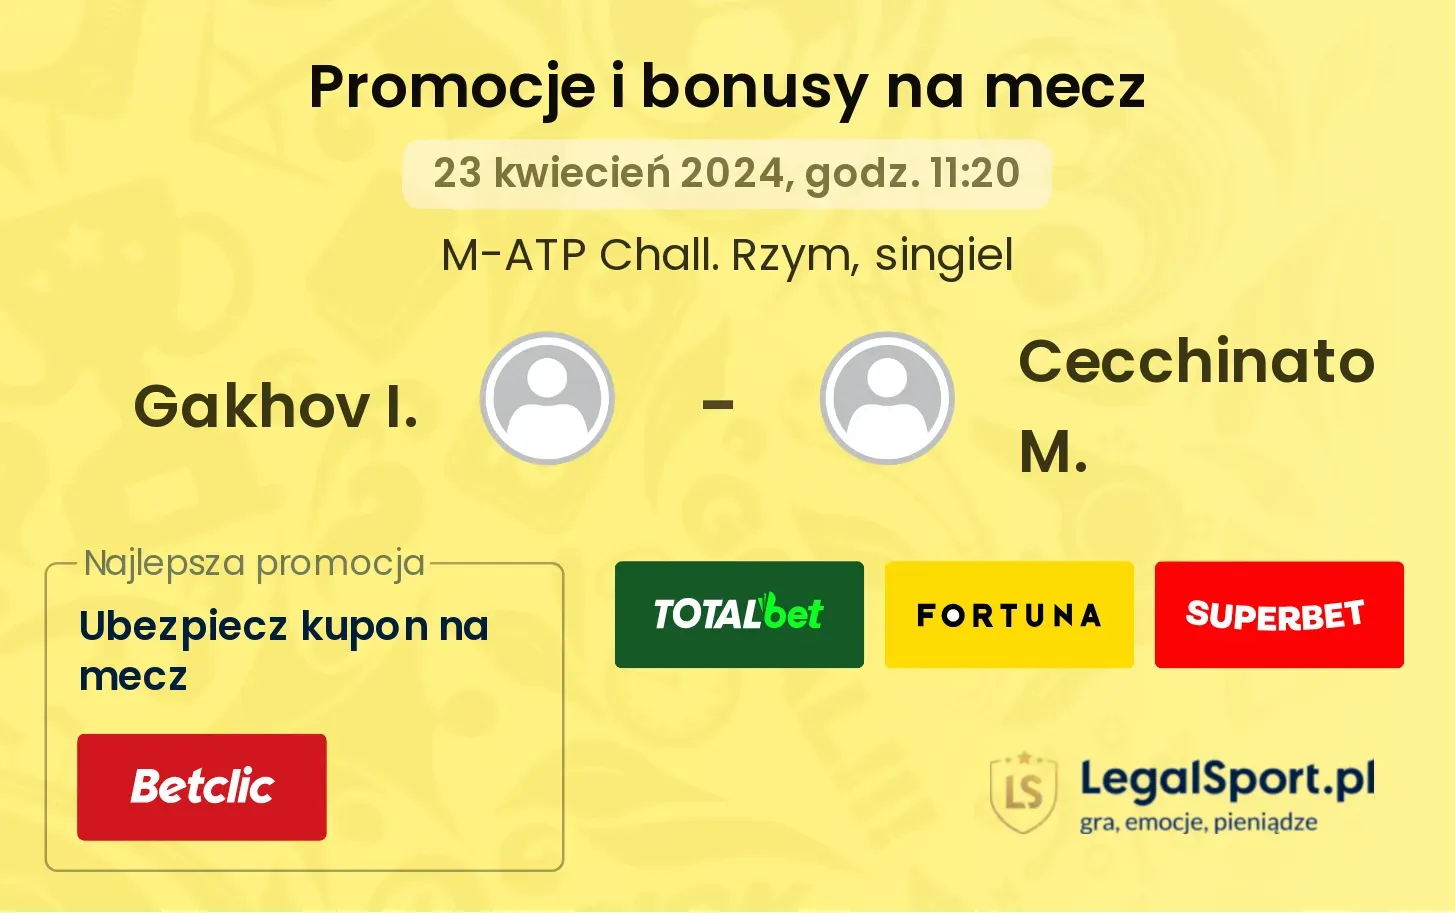 Gakhov I. - Cecchinato M. promocje bonusy na mecz